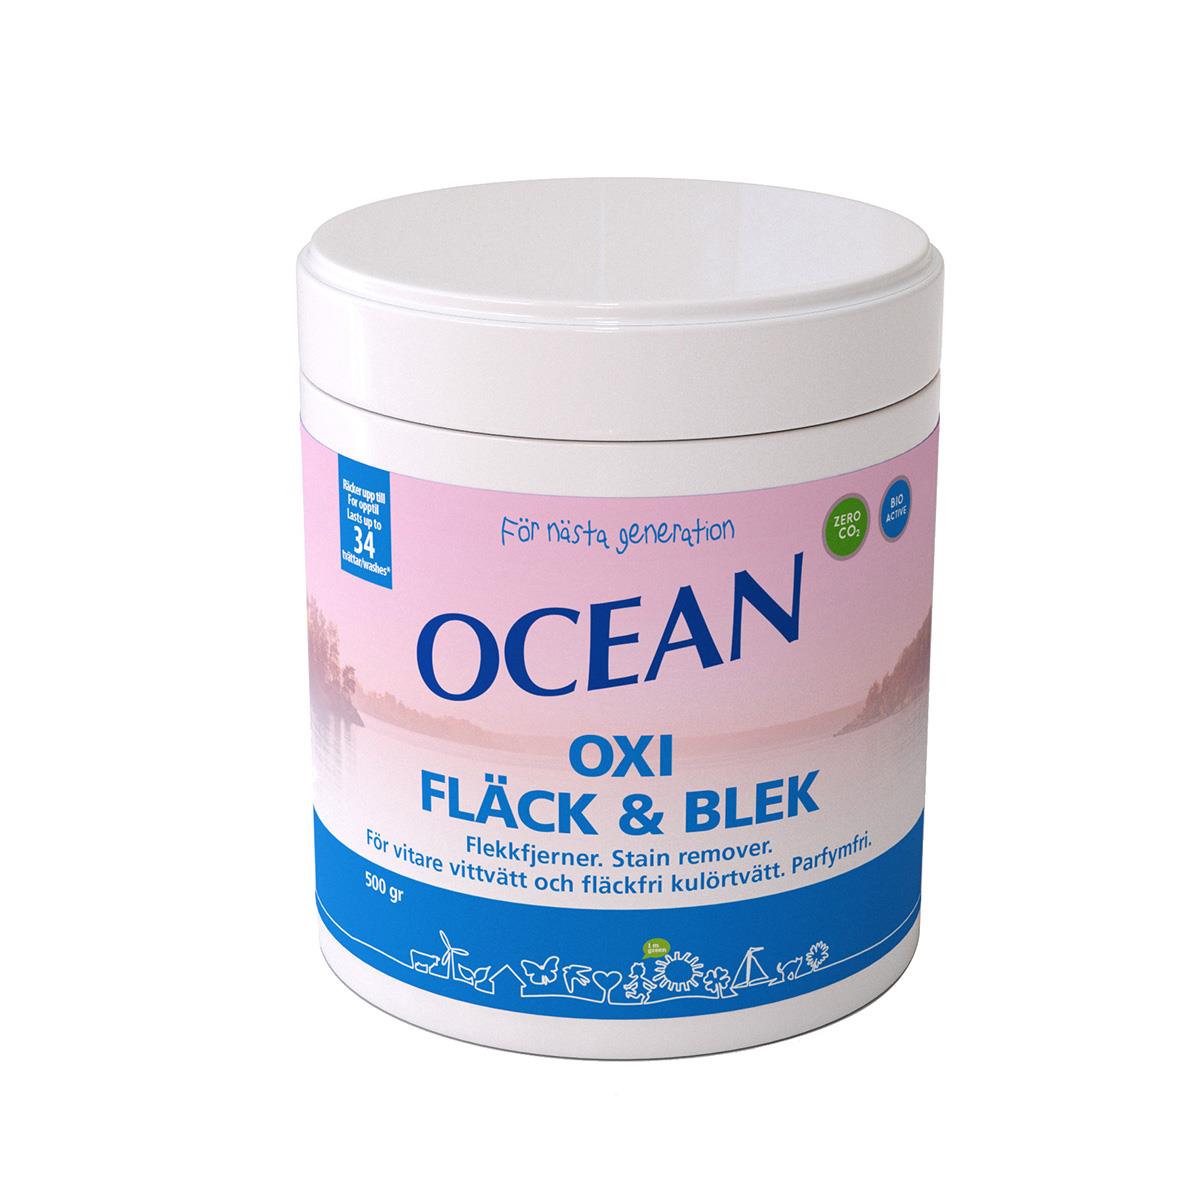 Fläckborttagare Ocean Oxi Fläck & Blek 500g 52100306